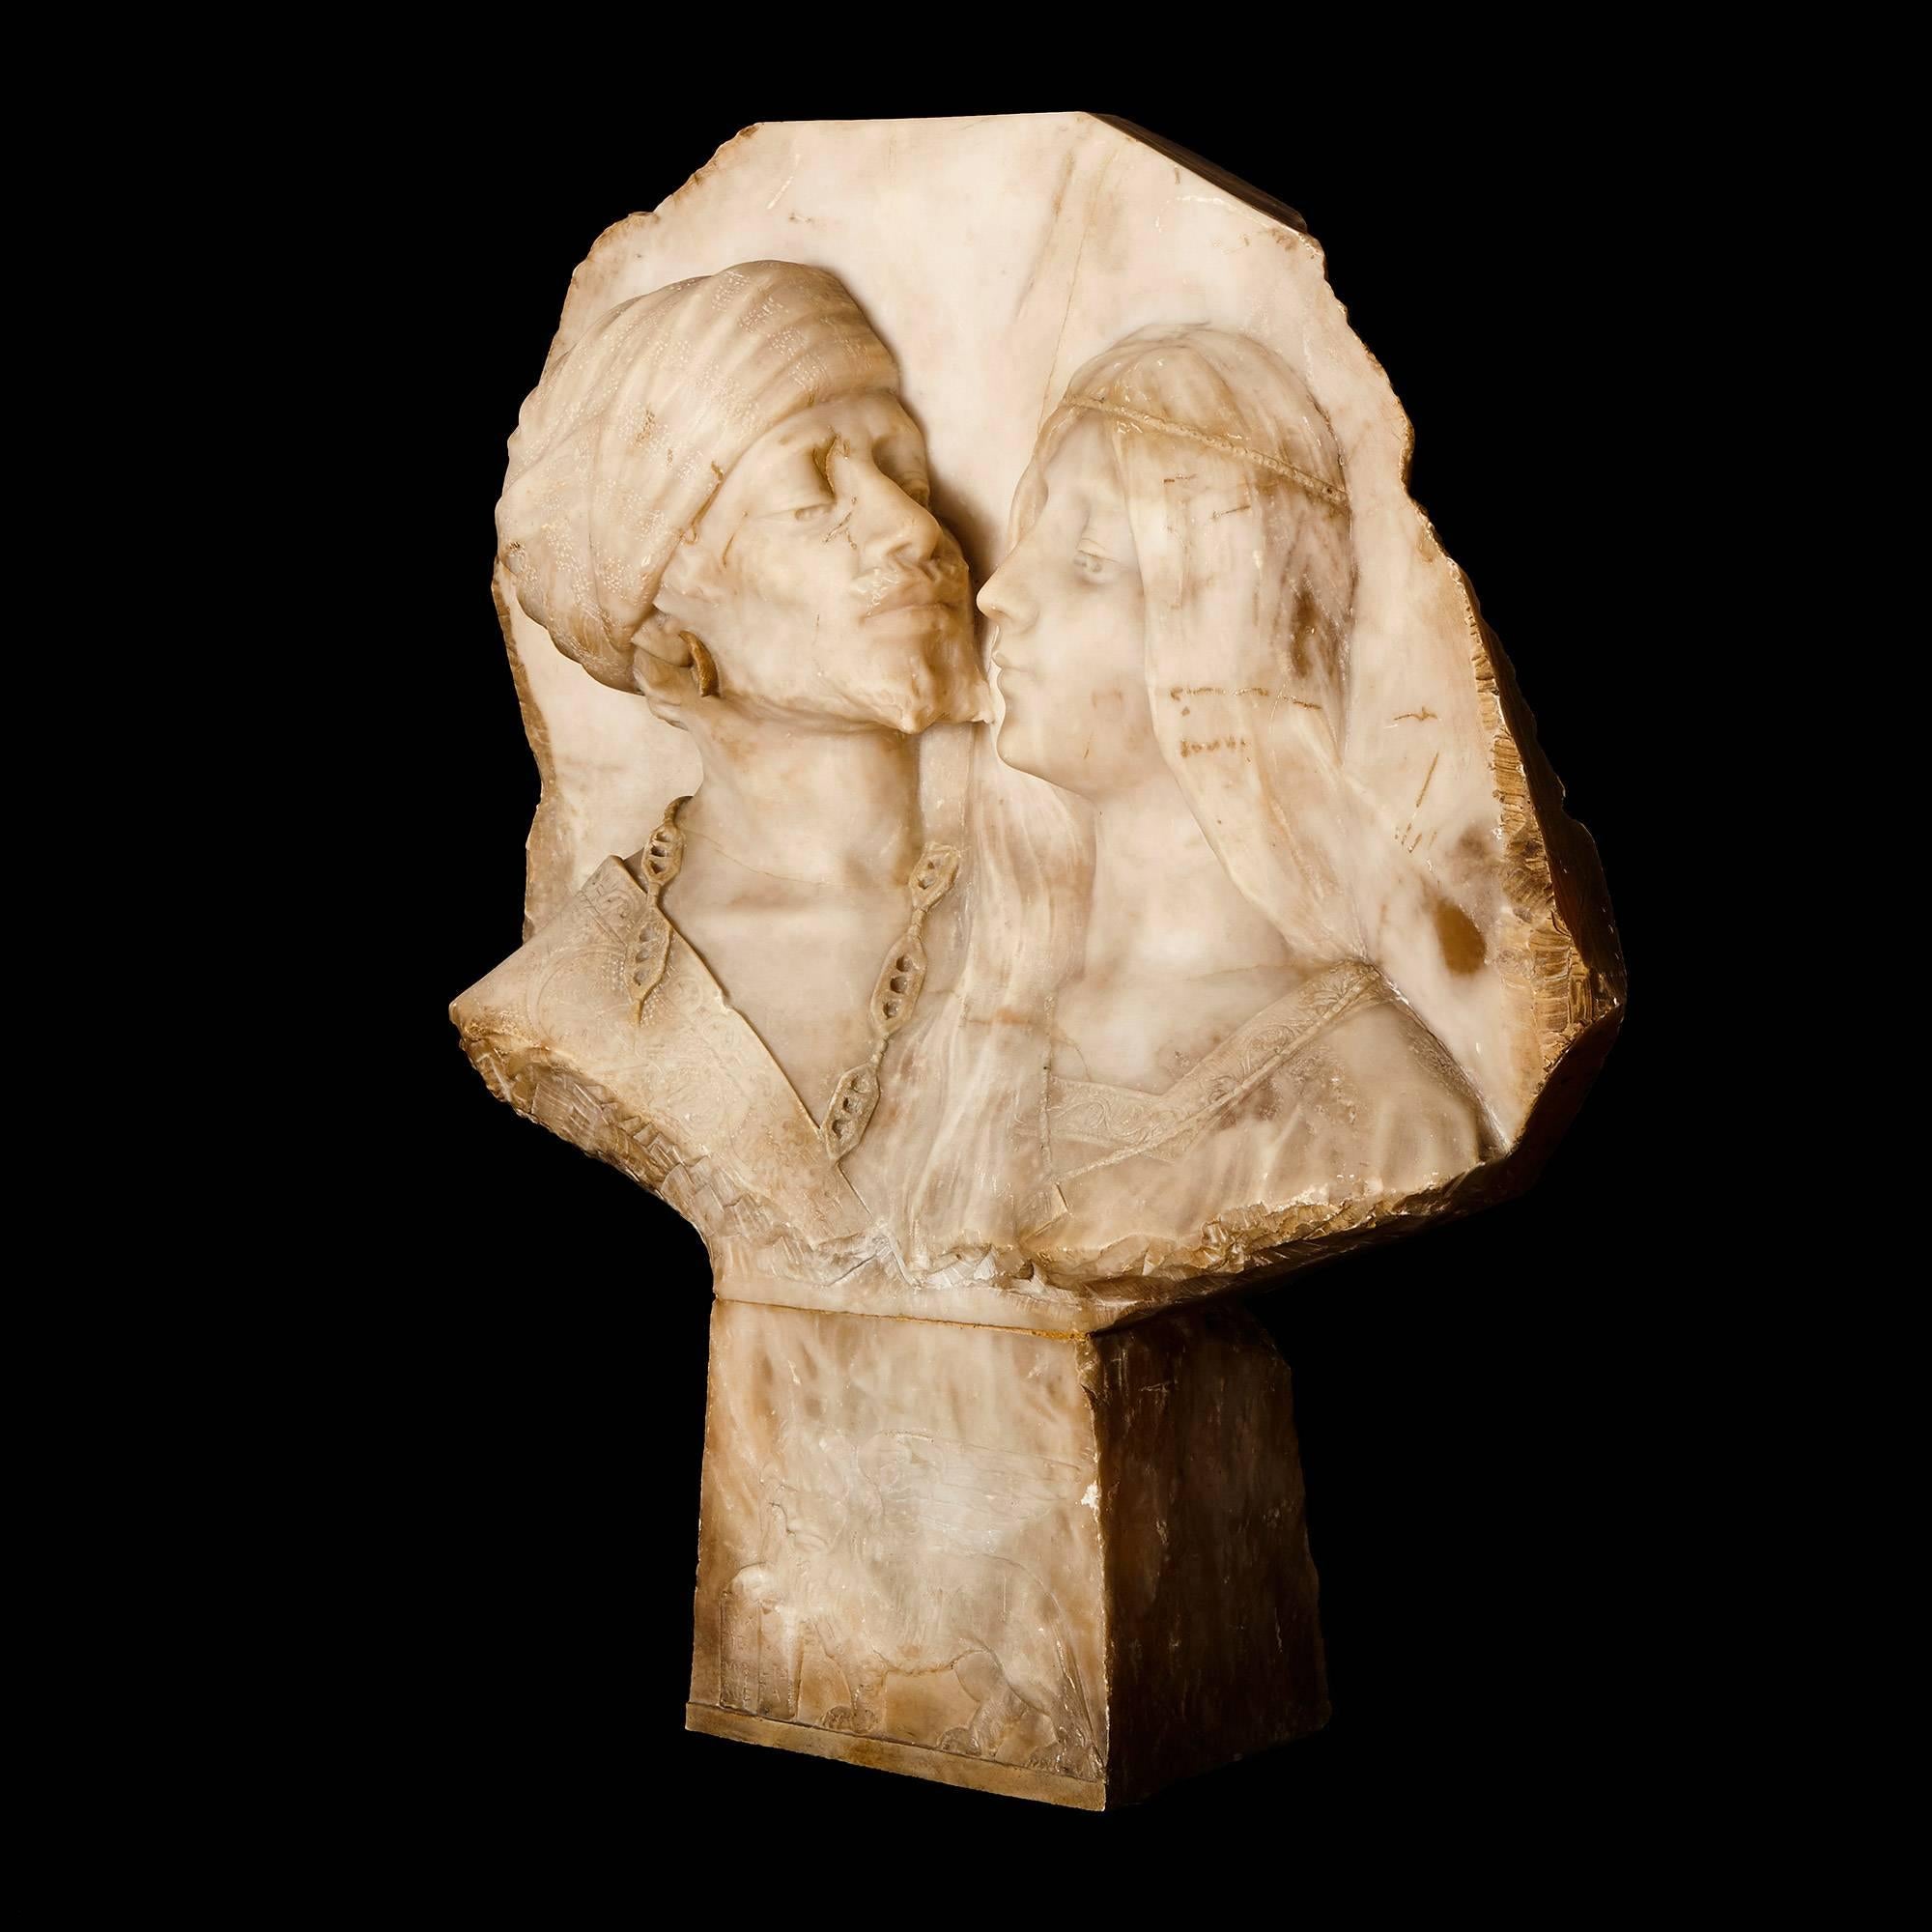 Ce charmant panneau ancien est sculpté dans le style orientaliste raffiné et représente une tendre étreinte entre un homme et une femme, capturant un moment d'intensité émotionnelle.

Le panneau représente un homme et une femme arabes en tenue